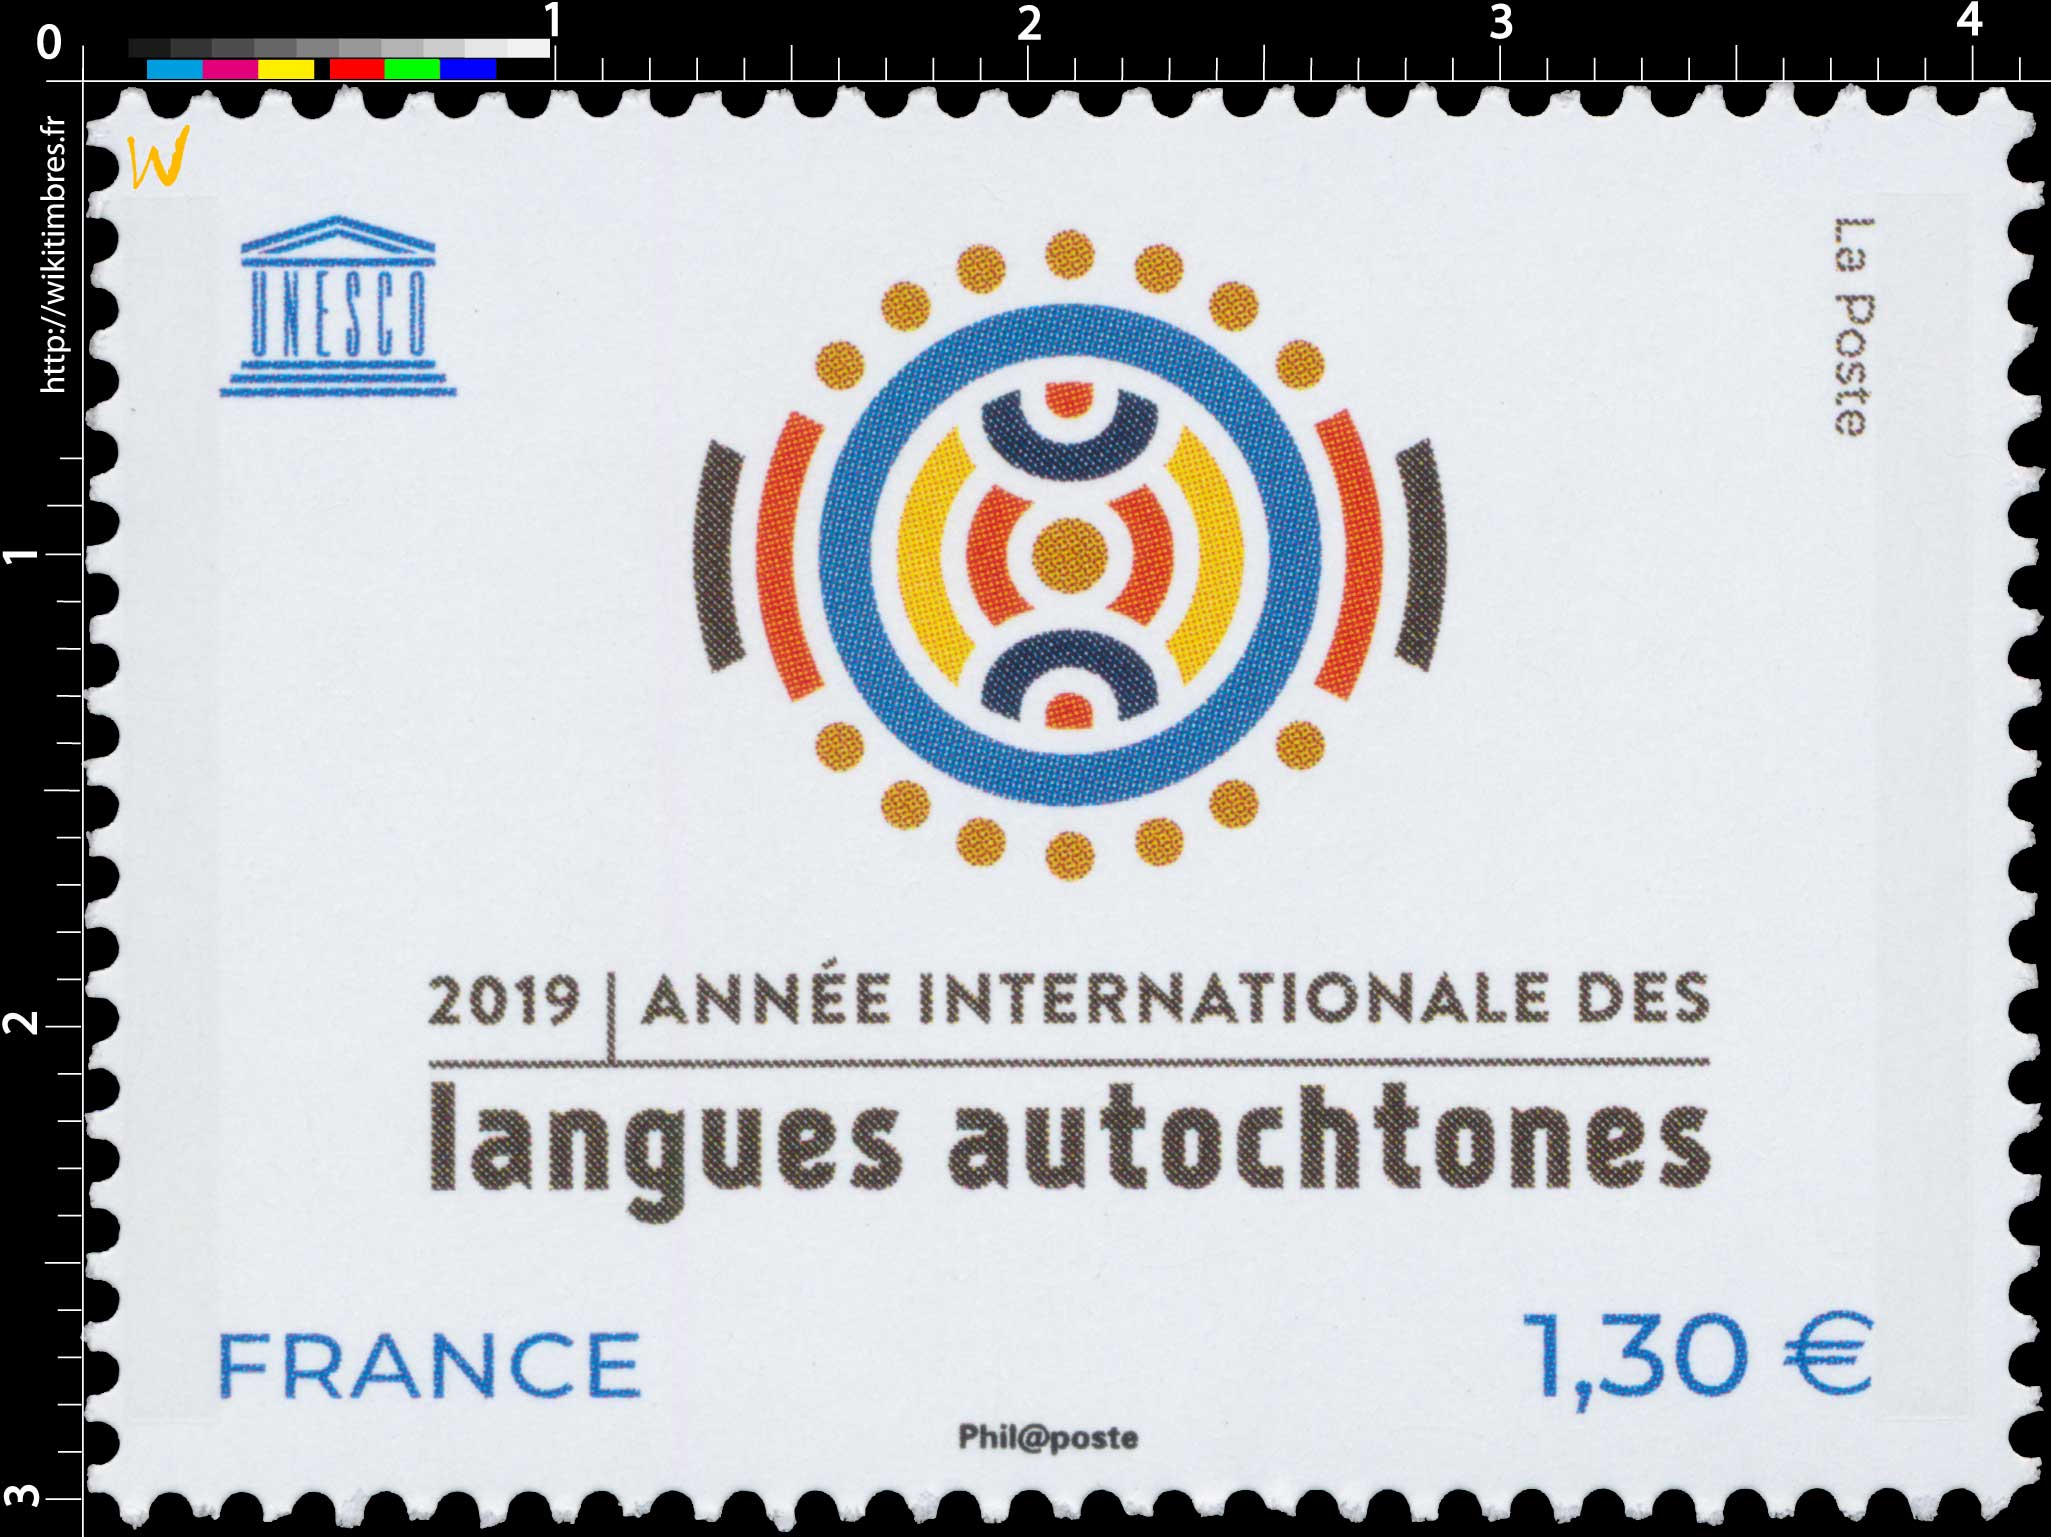 2019 Année internationale des langues autochtones